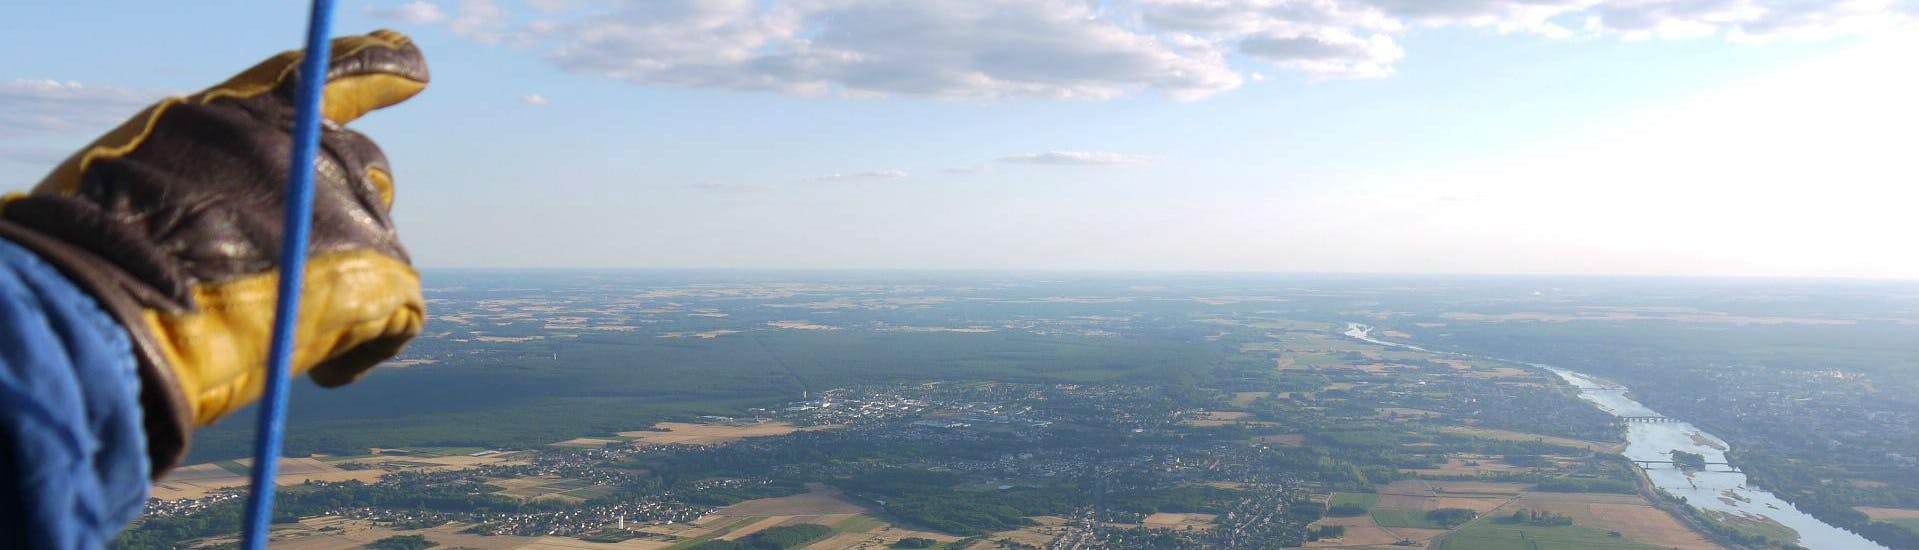 Vol en montgolfière à Blois-Chambord - Châteaux de la Loire.